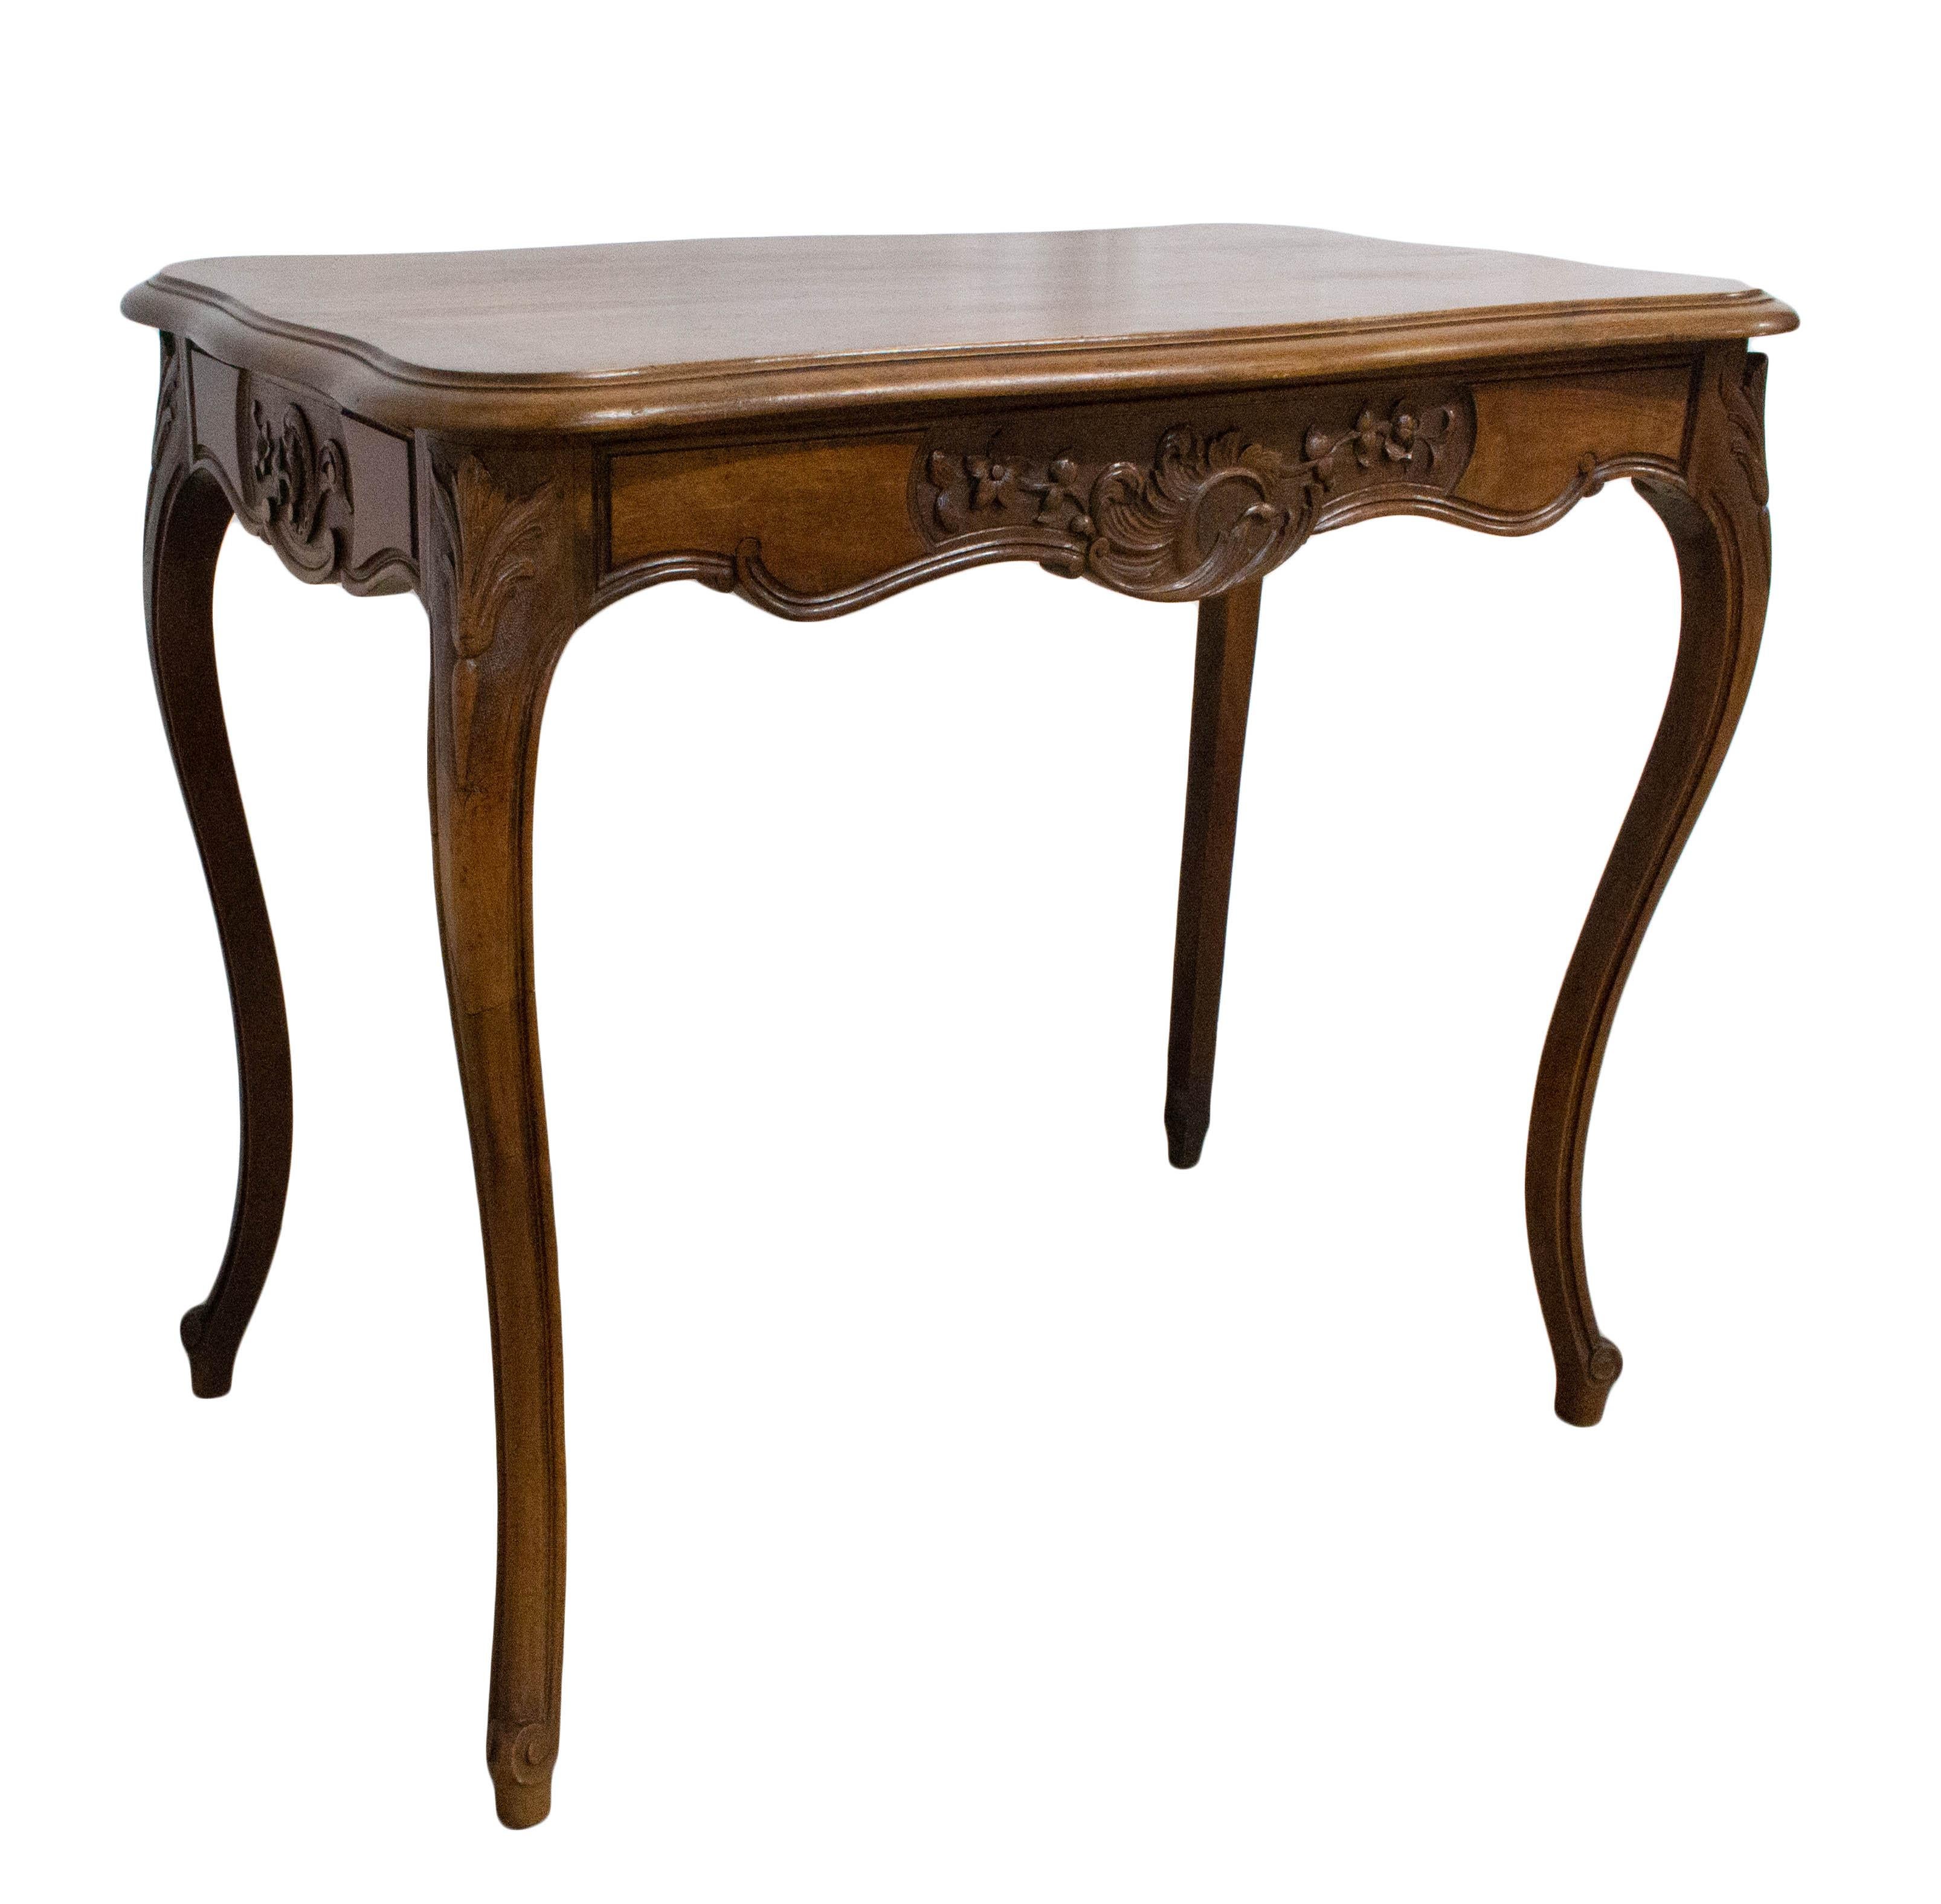 Table d'écriture de style Rocaille, petit bureau ou table d'appoint, vers 1950.
Bon état

Pour l'expédition :
L 89,5, P 52,5, H 75 8,6kg.